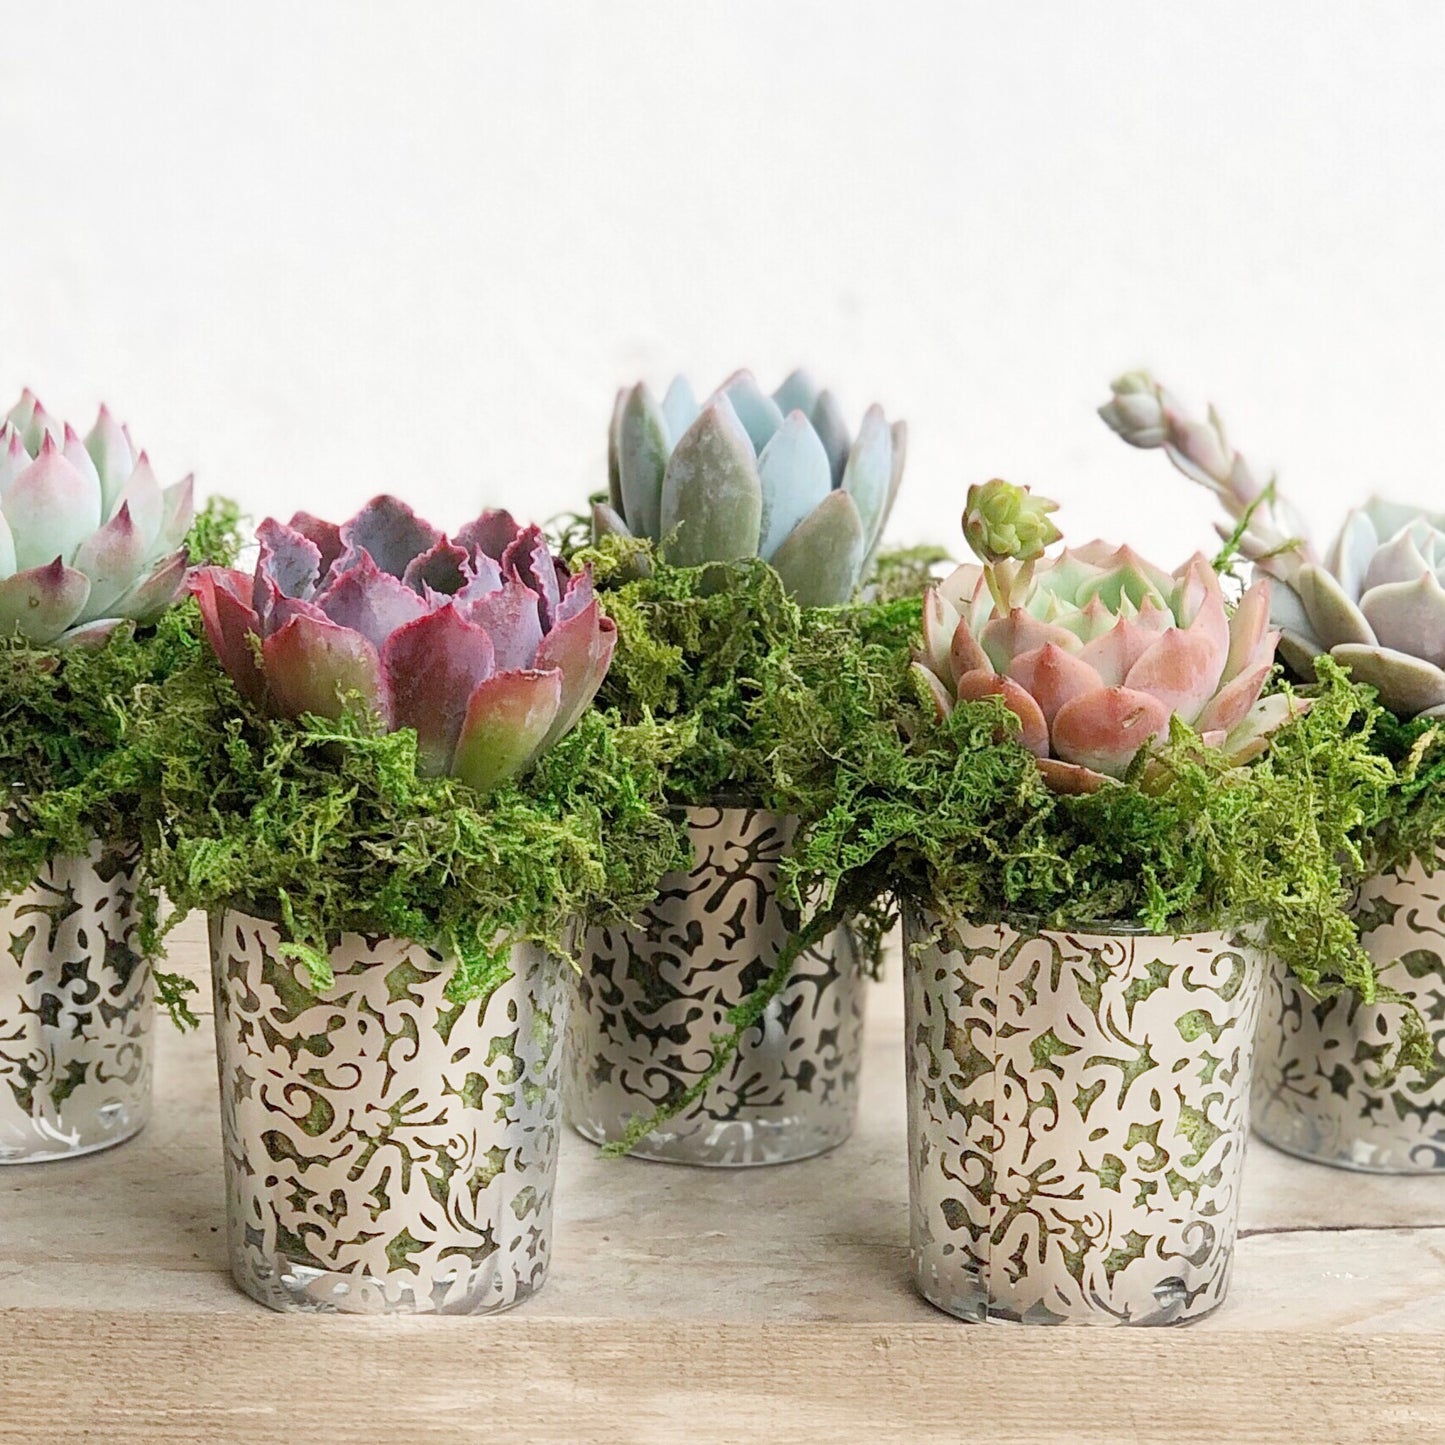 Succulent Favors in Silver Lace Pots.